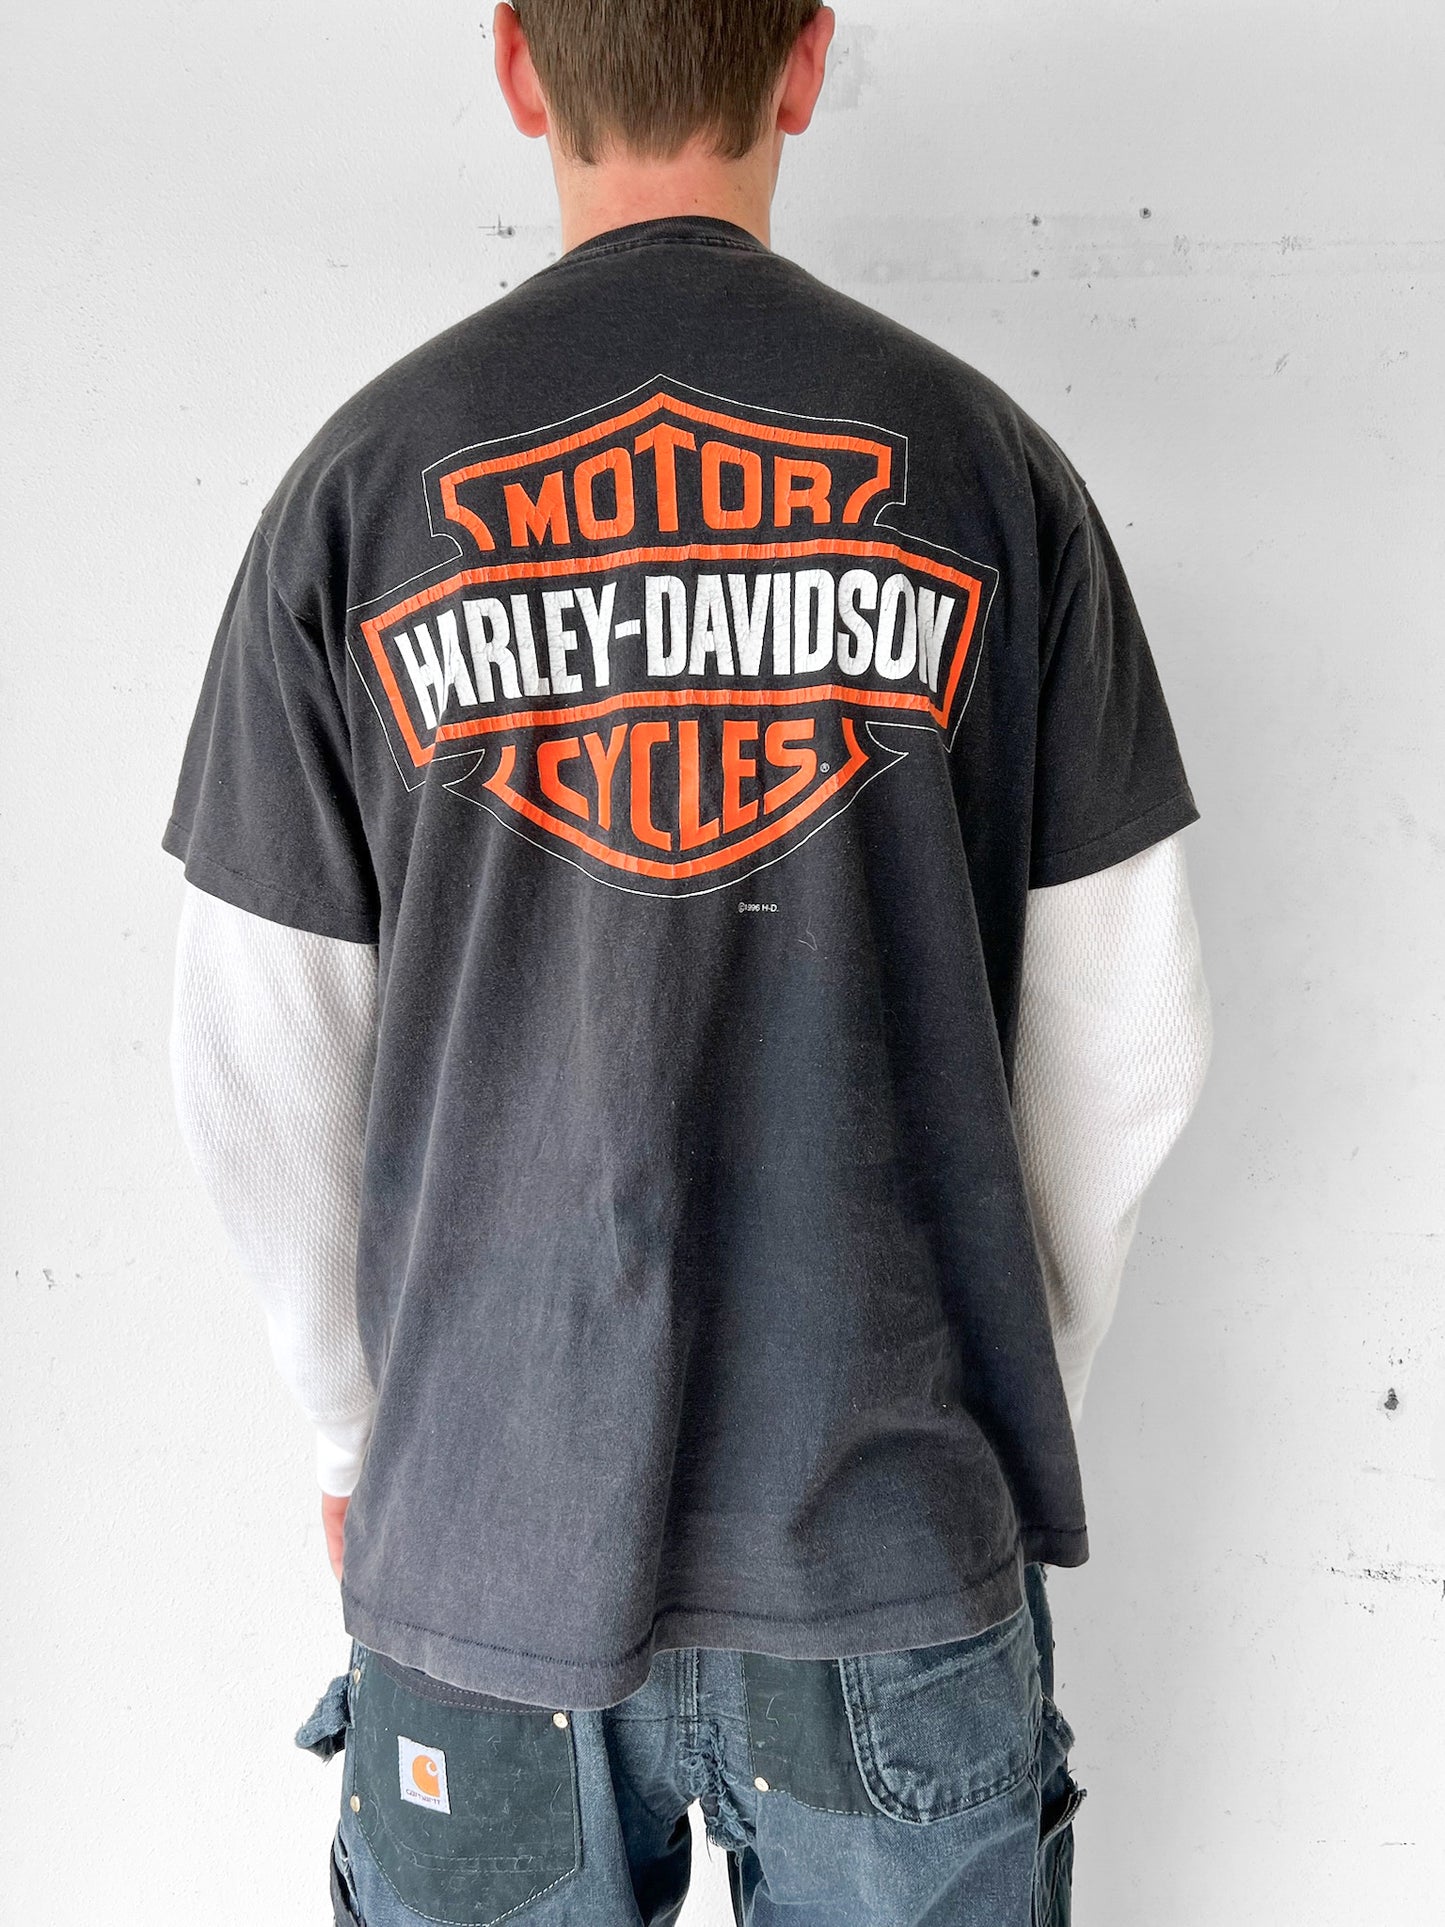 90’s Harley Davidson Shirt - L